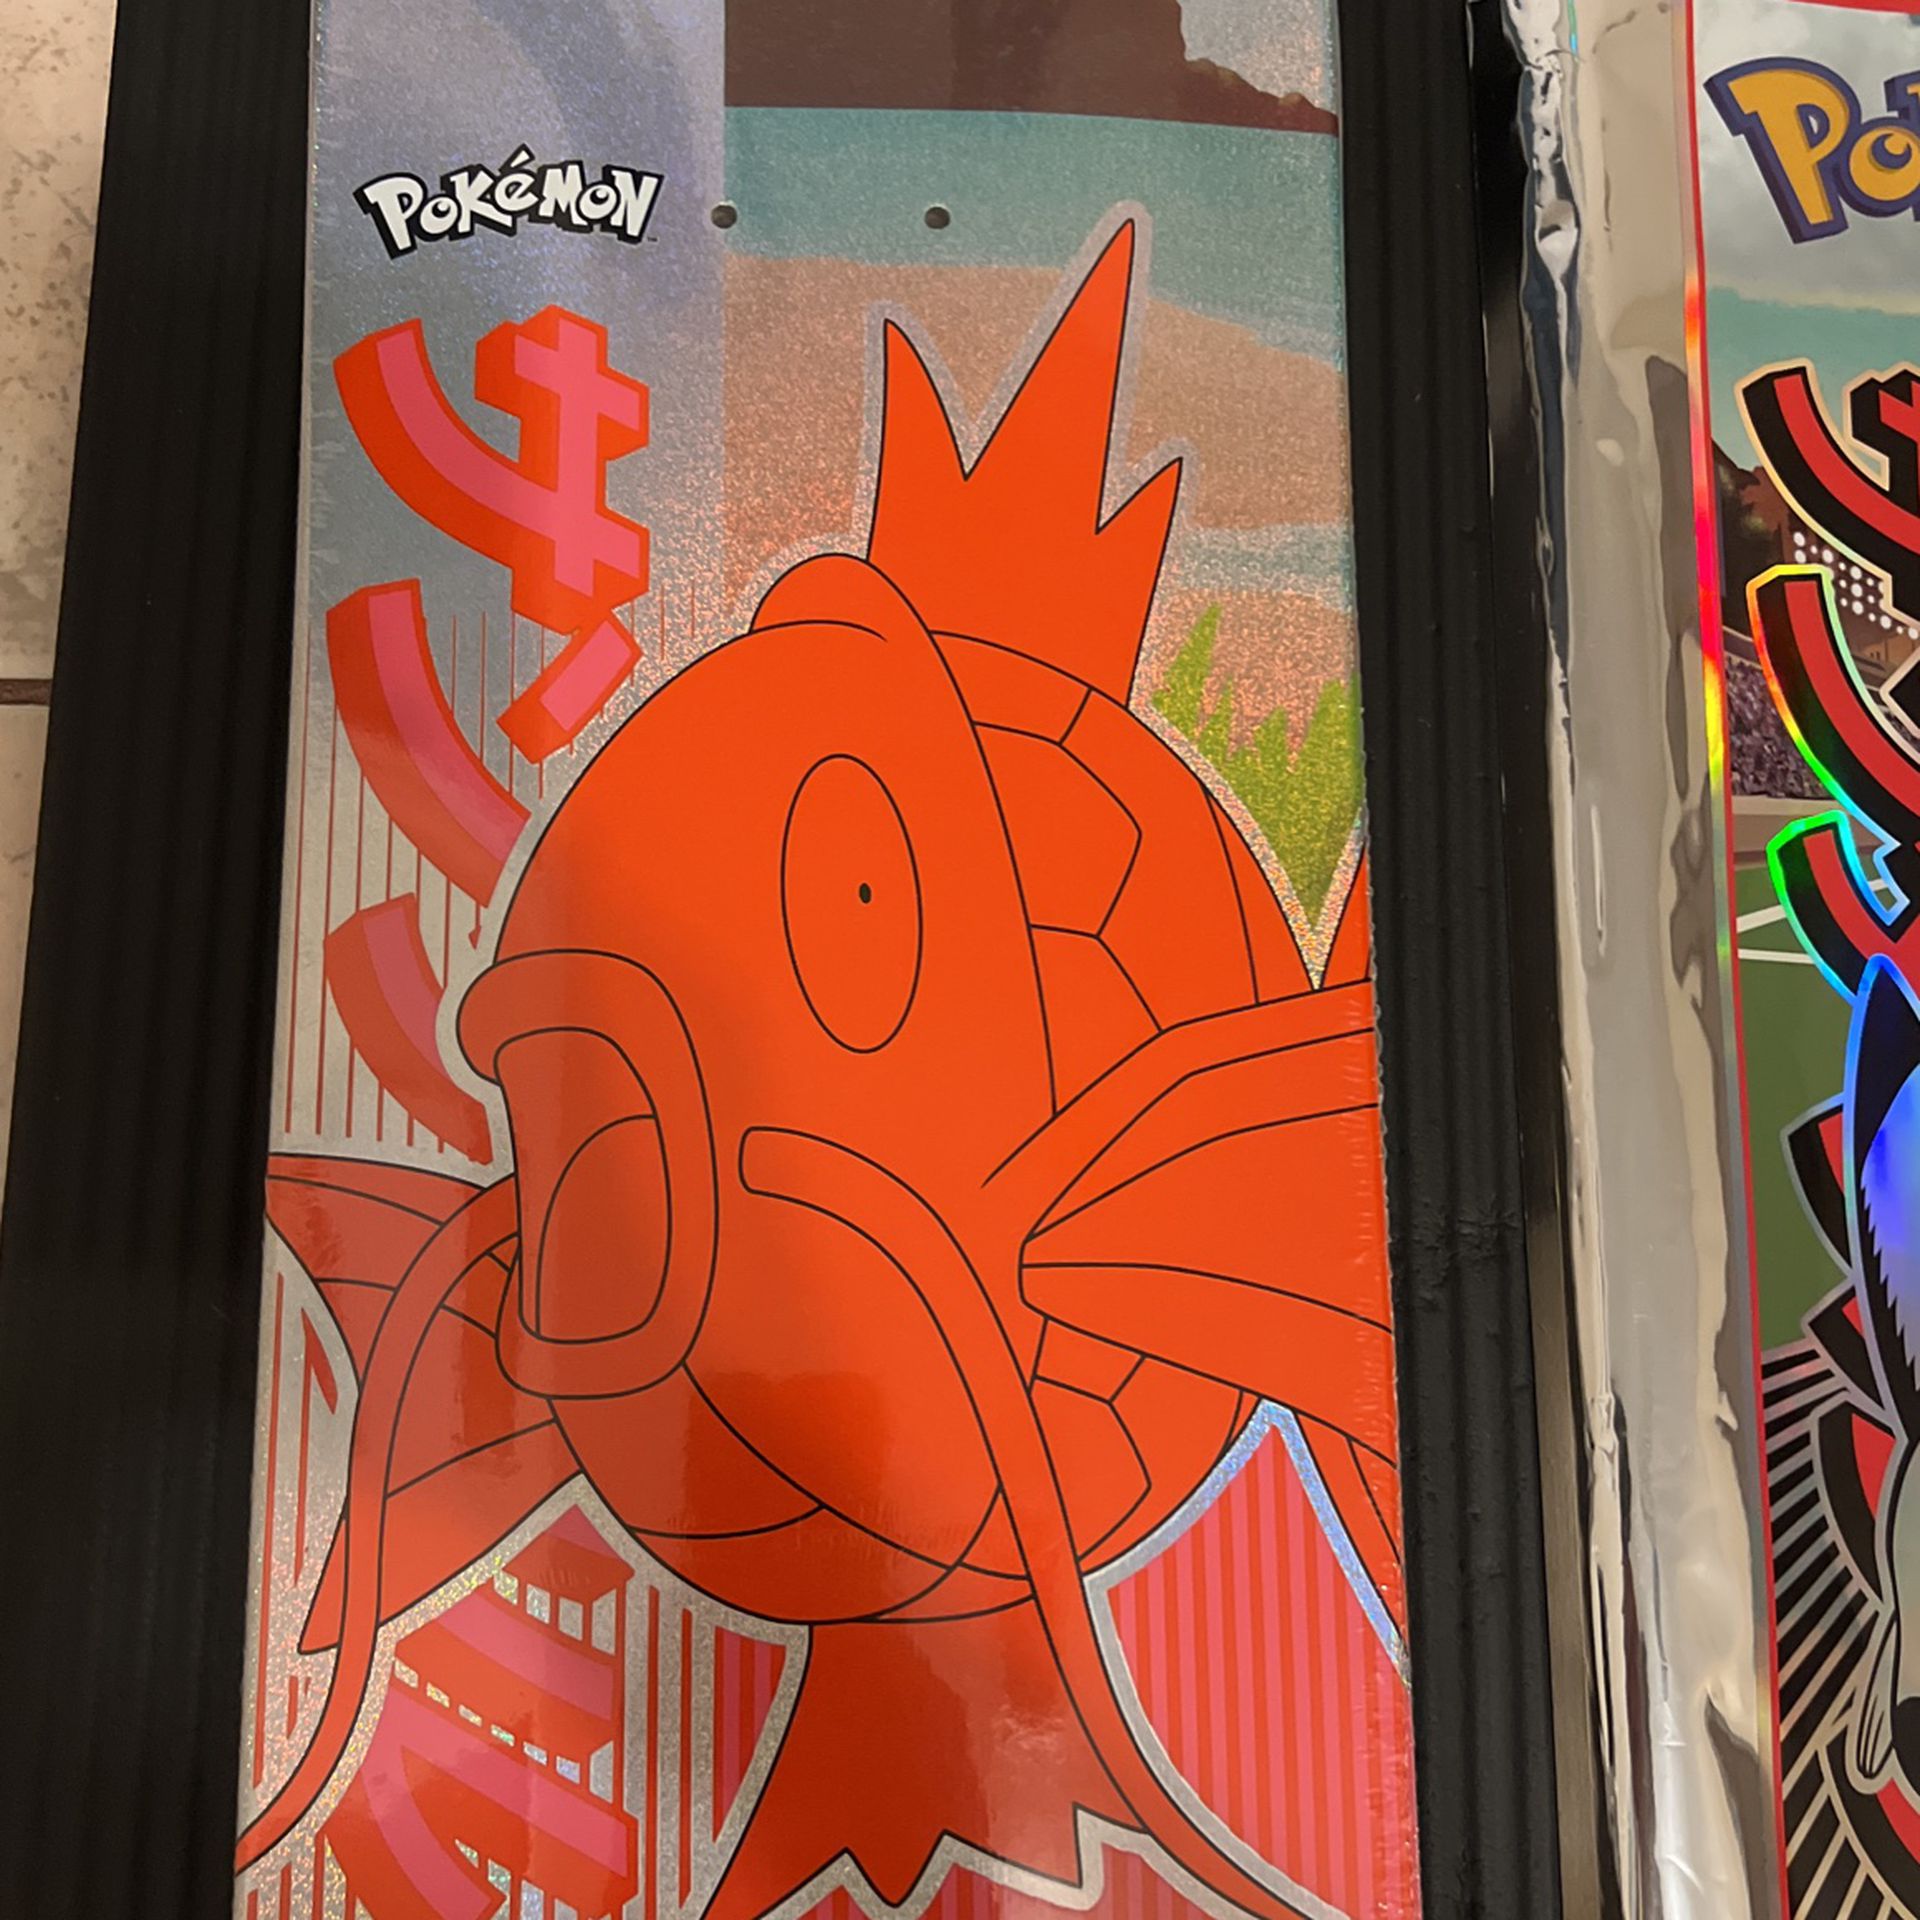 Pokémon x Santa Cruz Skateboard - Magikarp